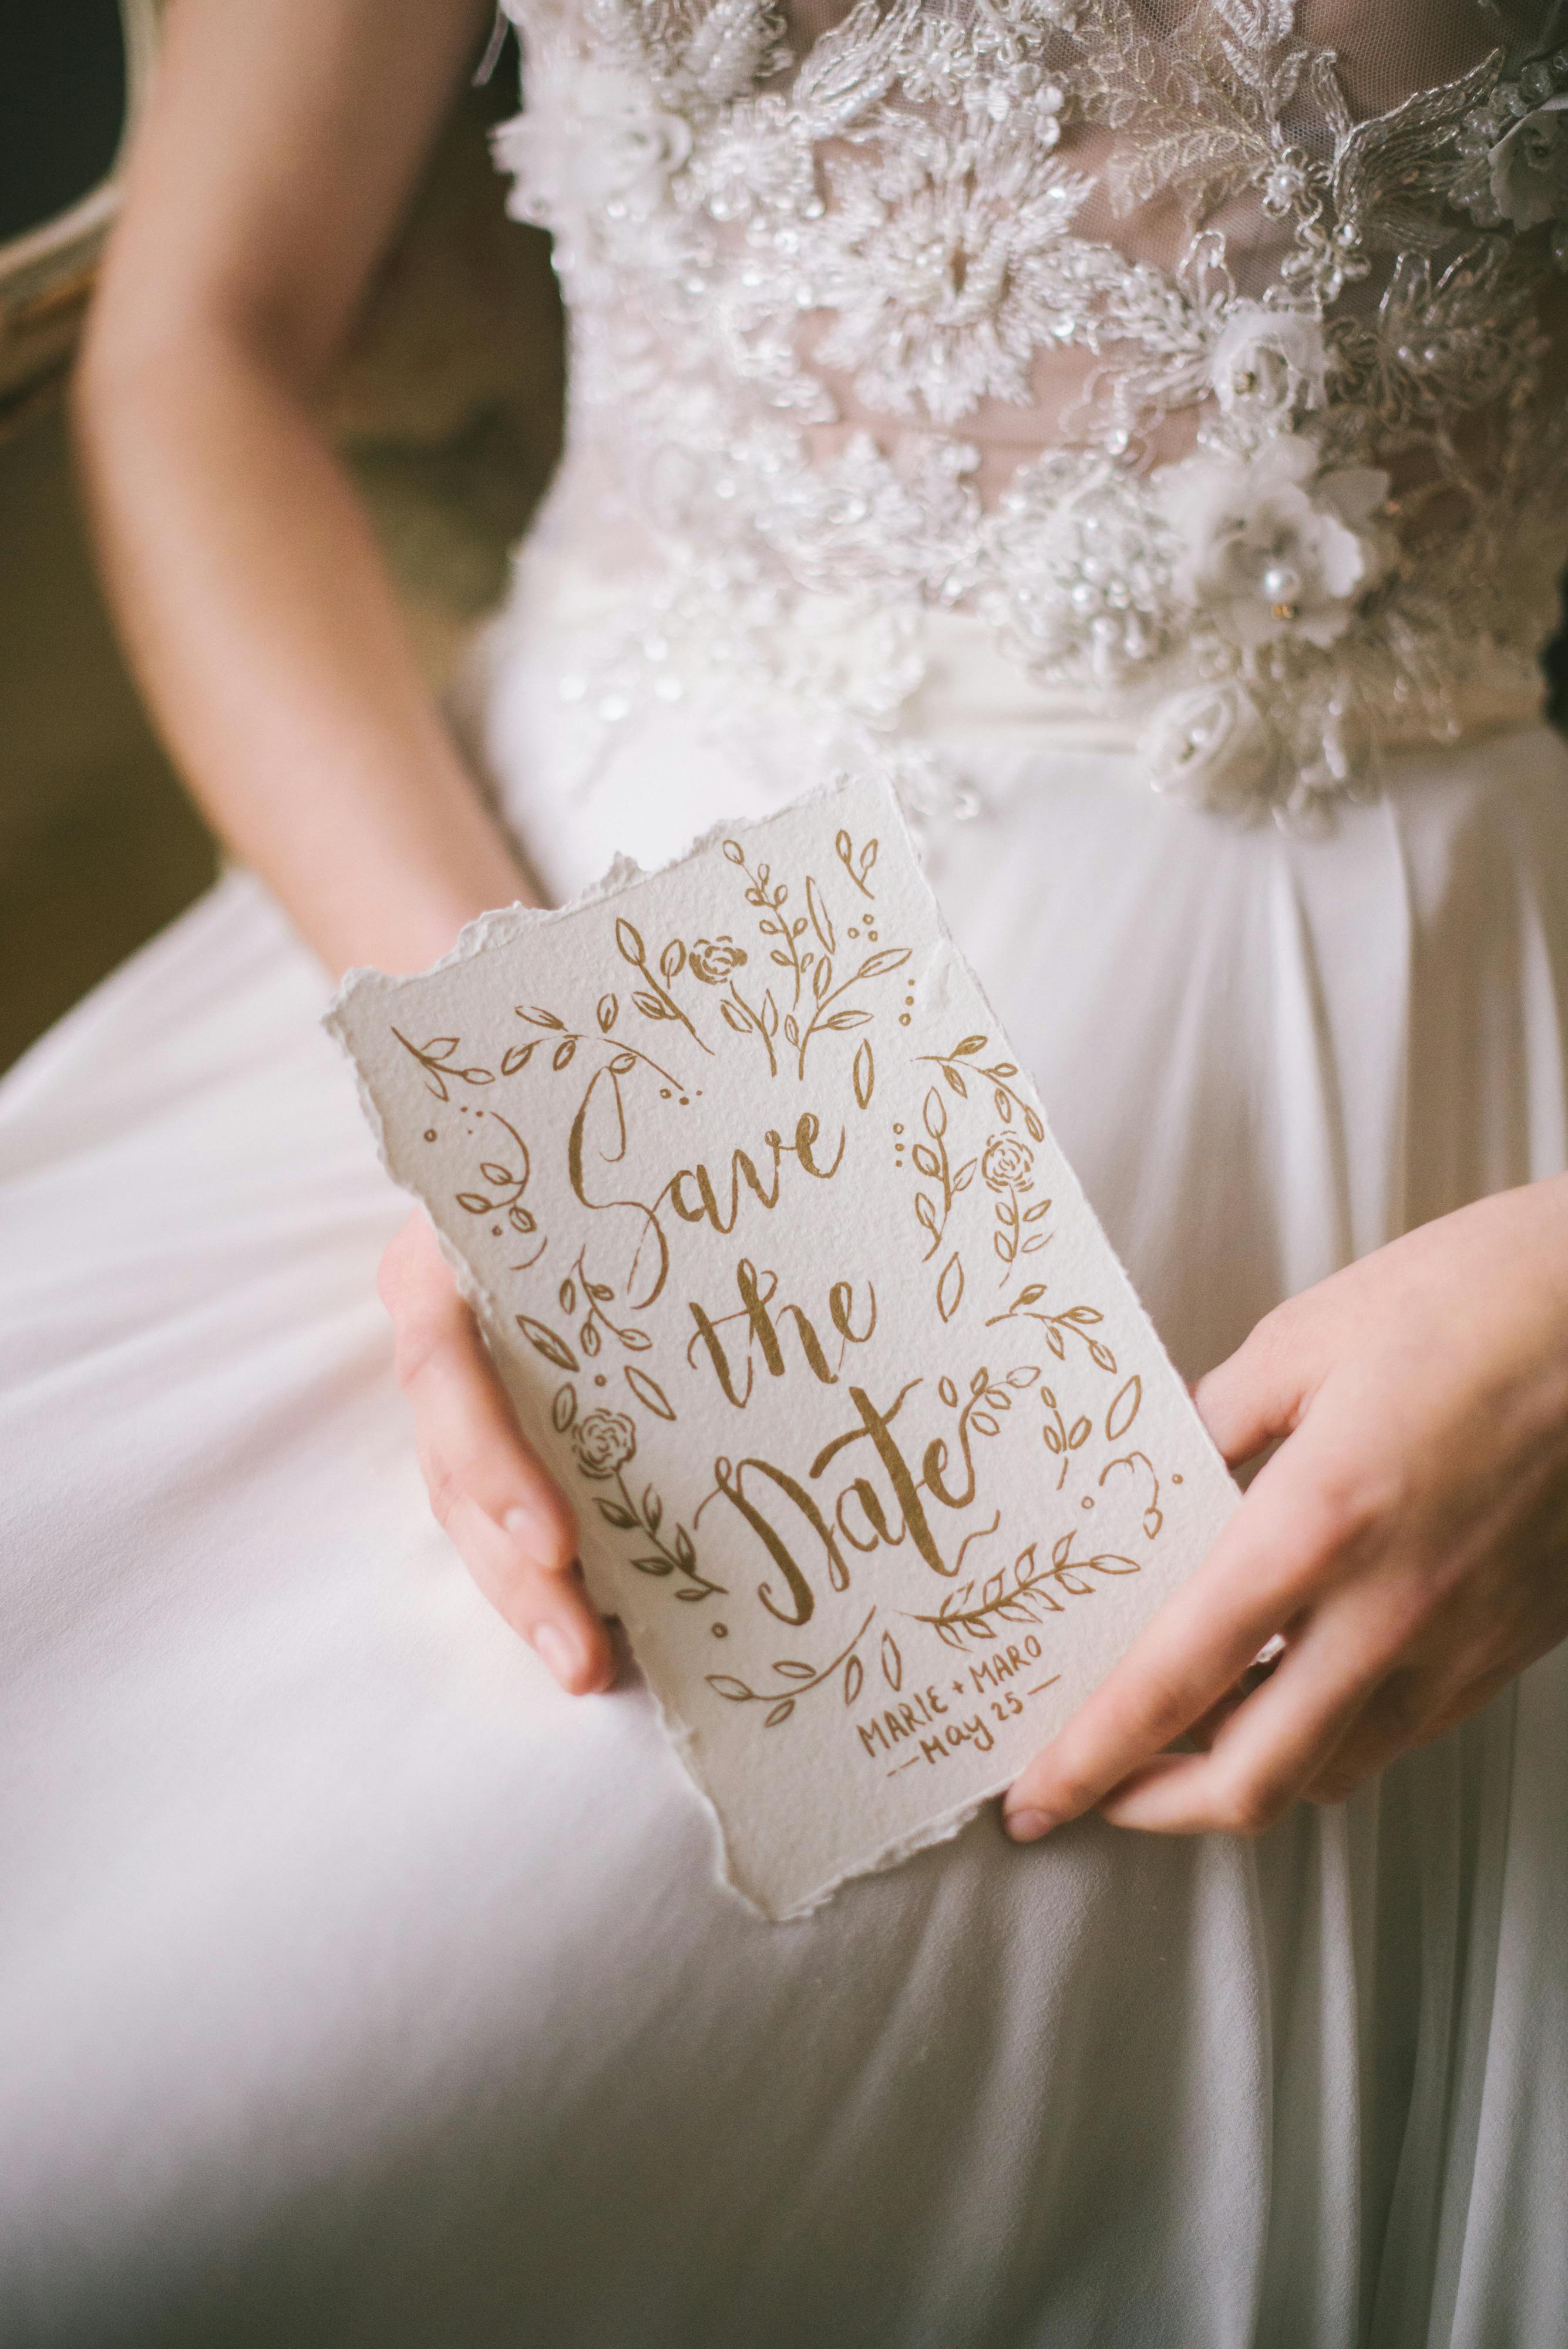 Une femme en robe blanche tenant une invitation de mariage | Source : Pexels